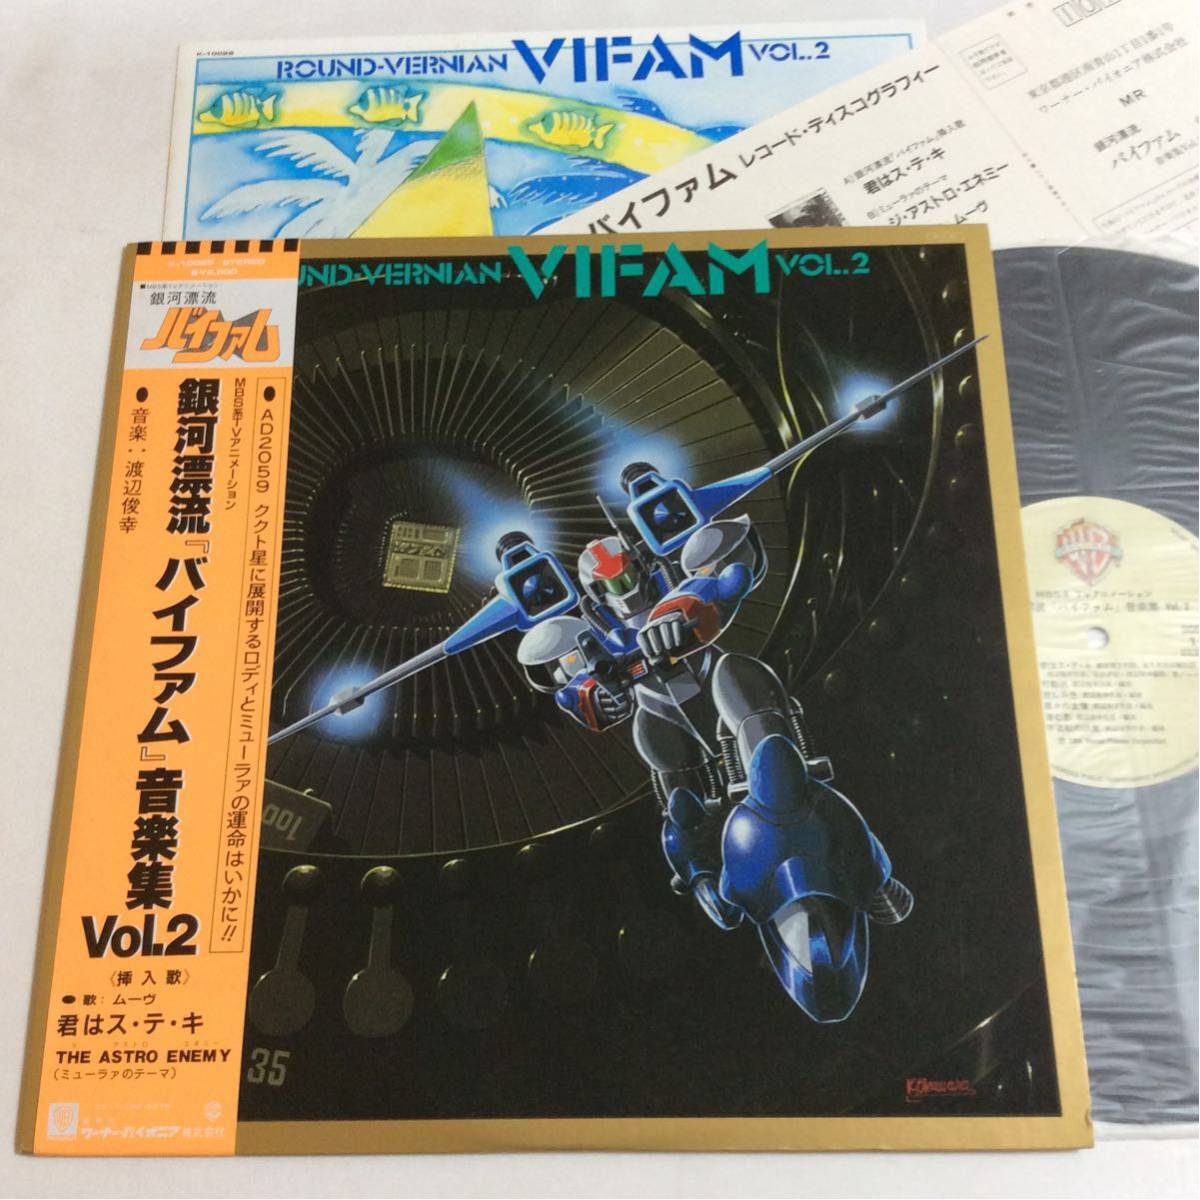 銀河漂流バイファム 音楽集 vol.1 2 カセットテープ - 邦楽